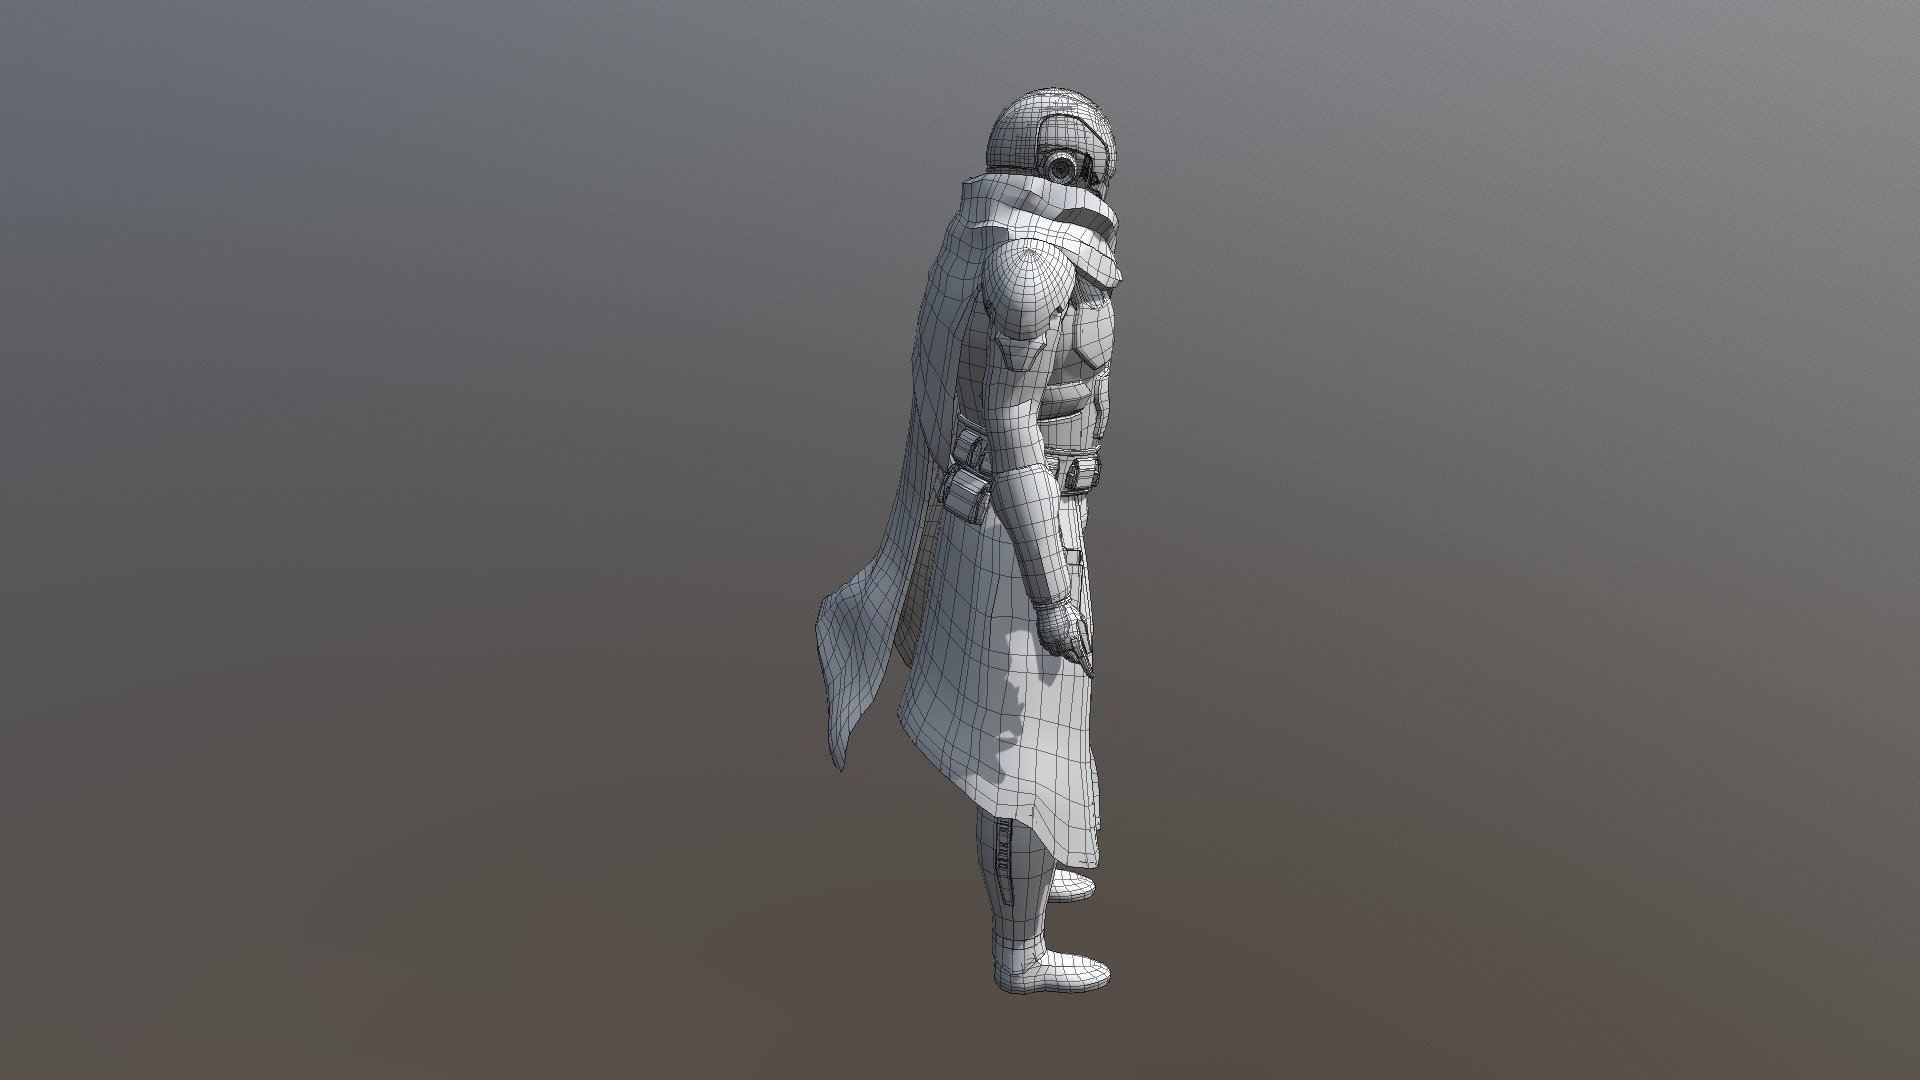 Low Poly Jedi Hunter - 3D model by wictornilsson 3d model